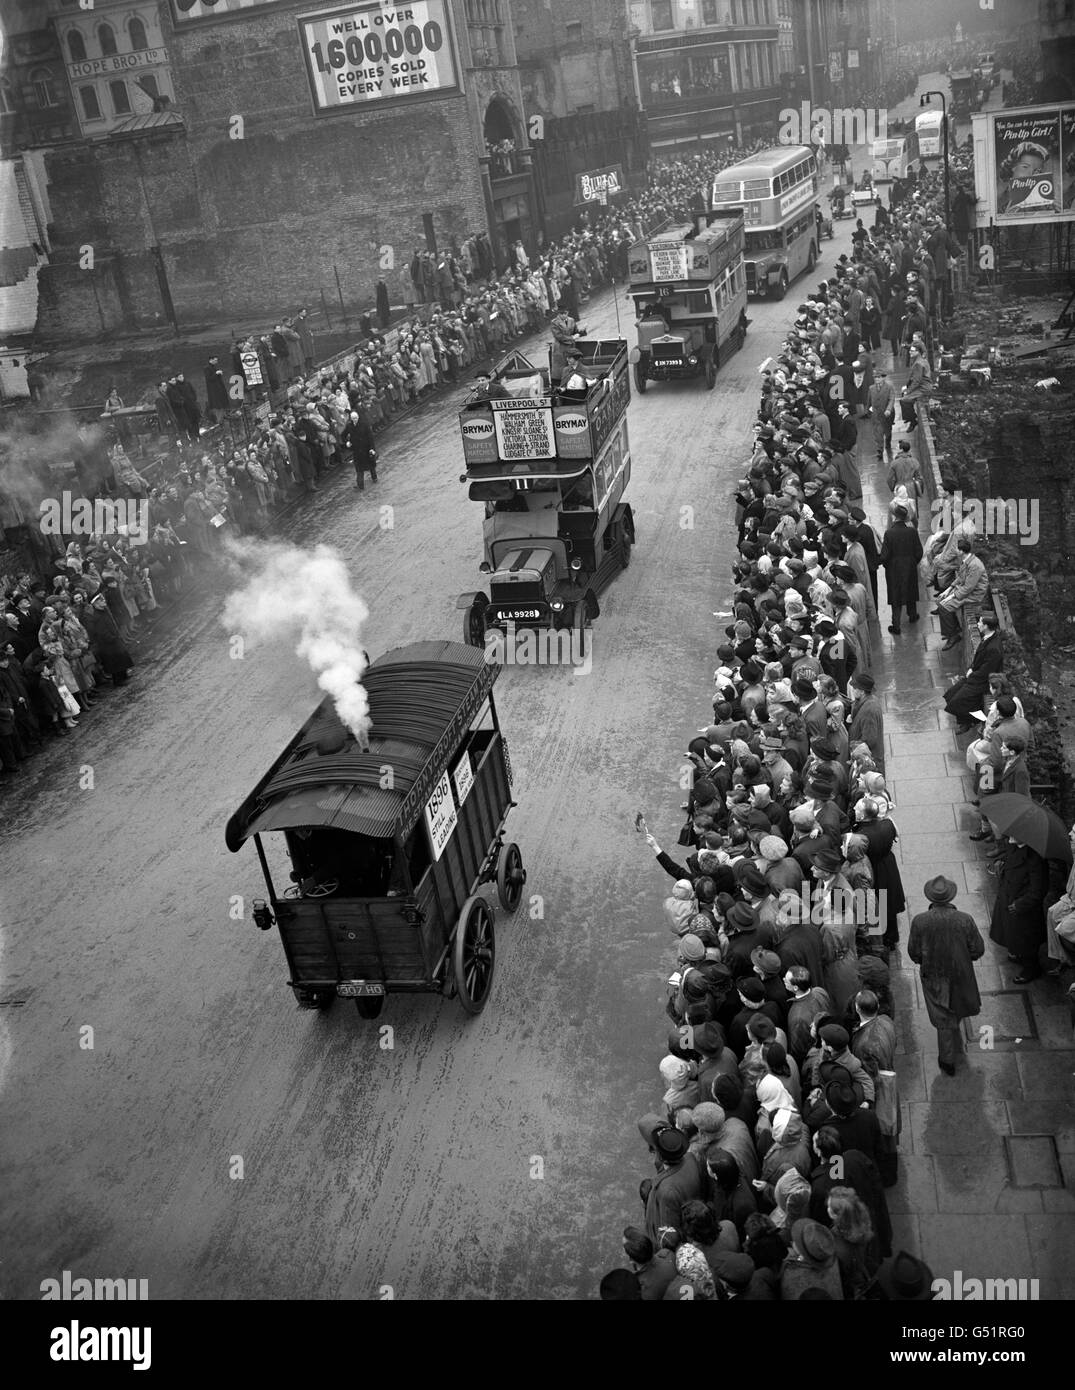 Un vieux wagon à vapeur descend la colline de Ludgate, suivi par des bus d'époque depuis London transport, sous la procession du maire Lord, jusqu'aux cours royales de justice. Banque D'Images